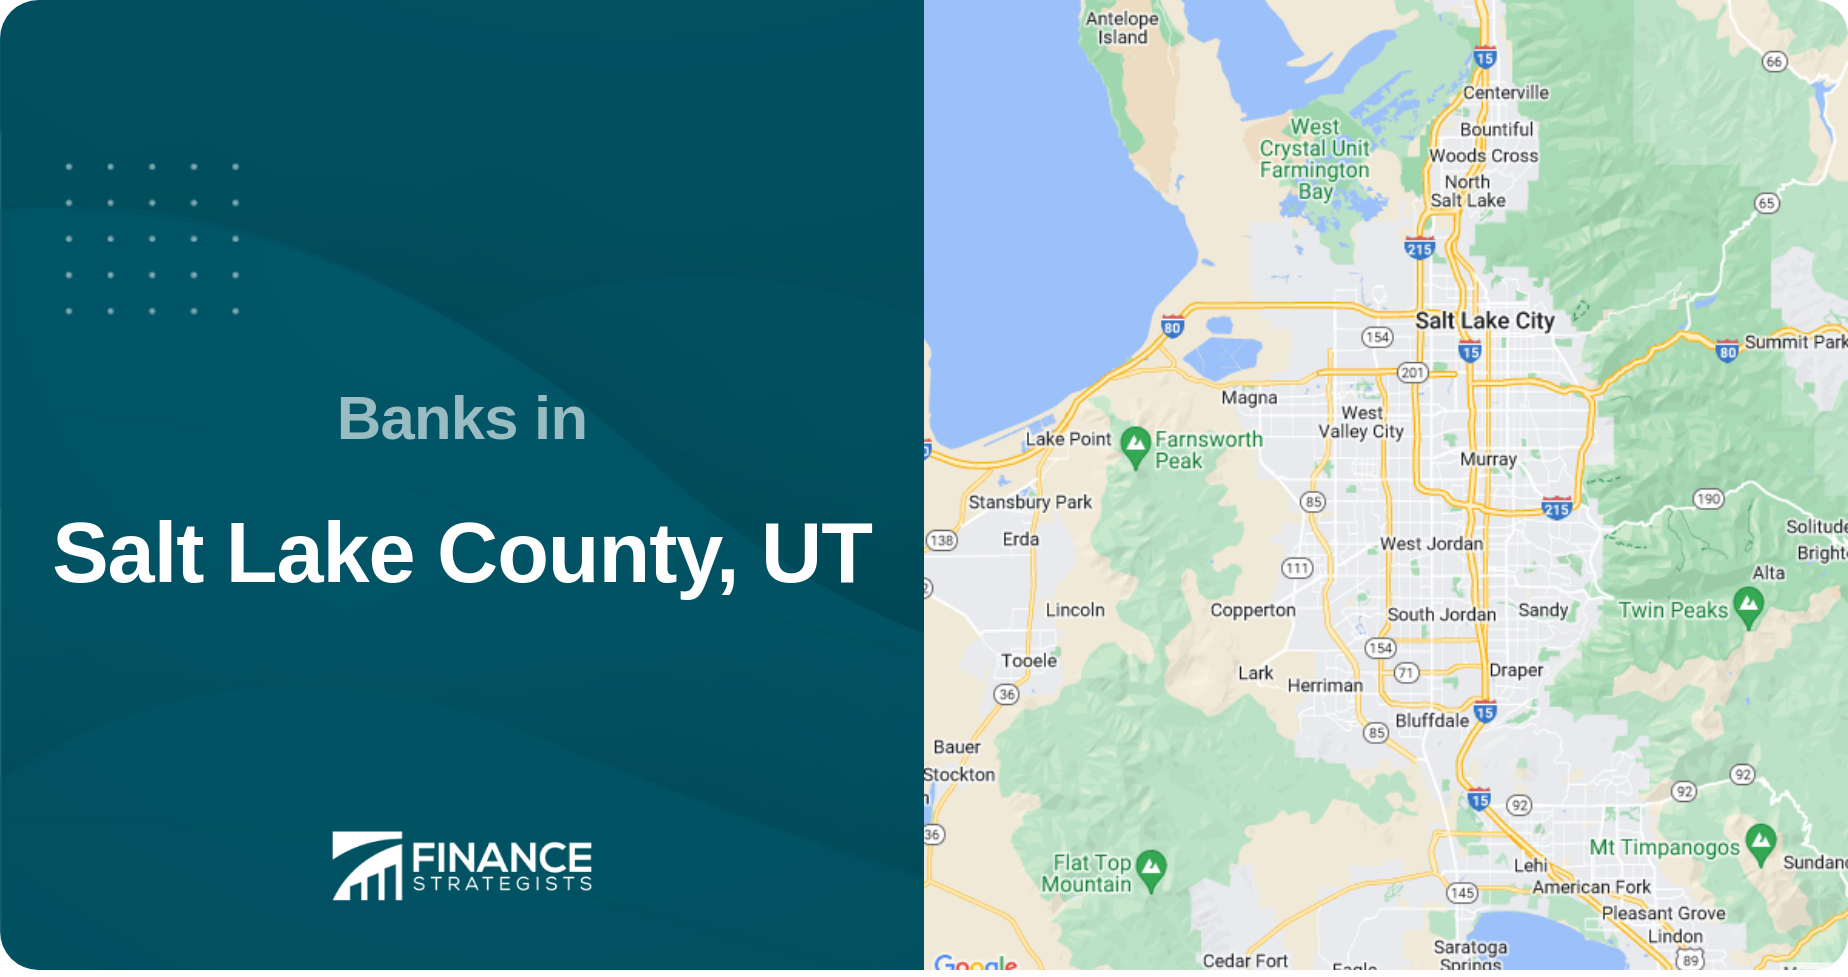 Banks in Salt Lake County, UT